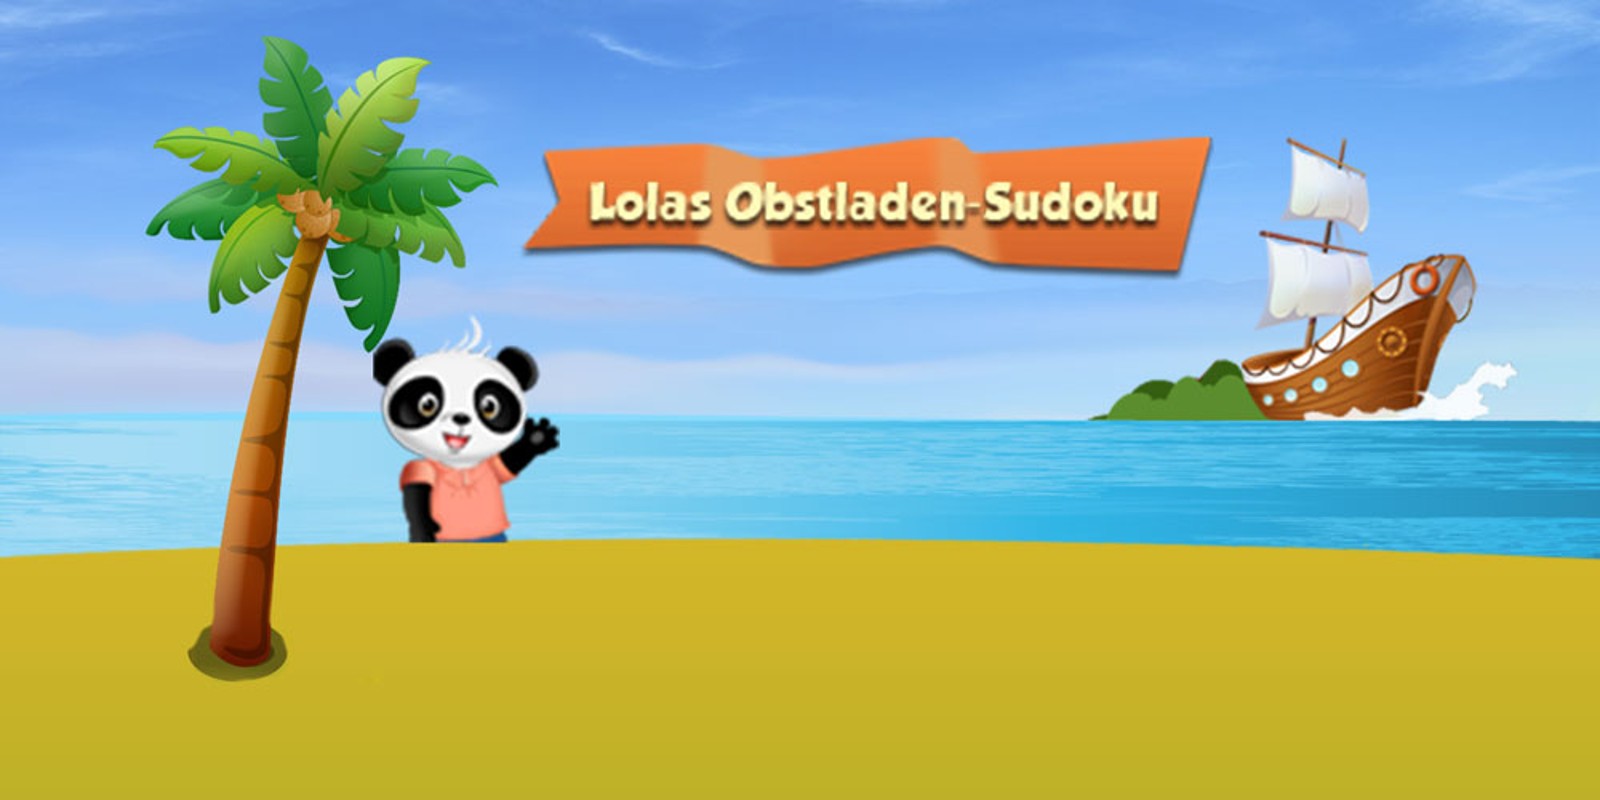 Lolas Obstladen-Sudoku